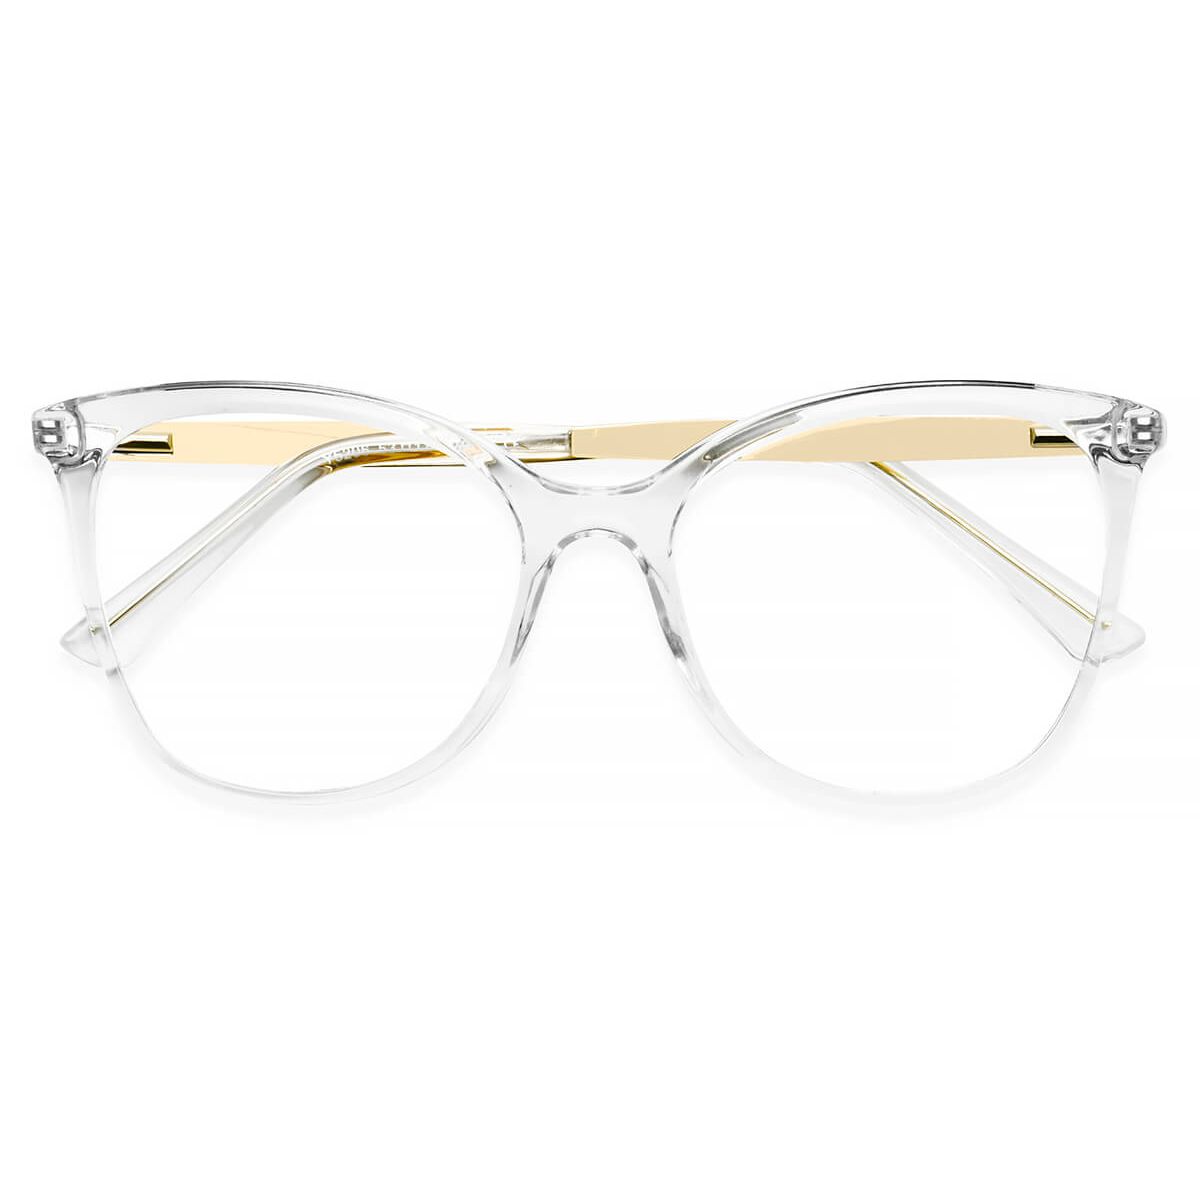 Y5206 Round Oval Clear Eyeglasses Frames Leoptique 